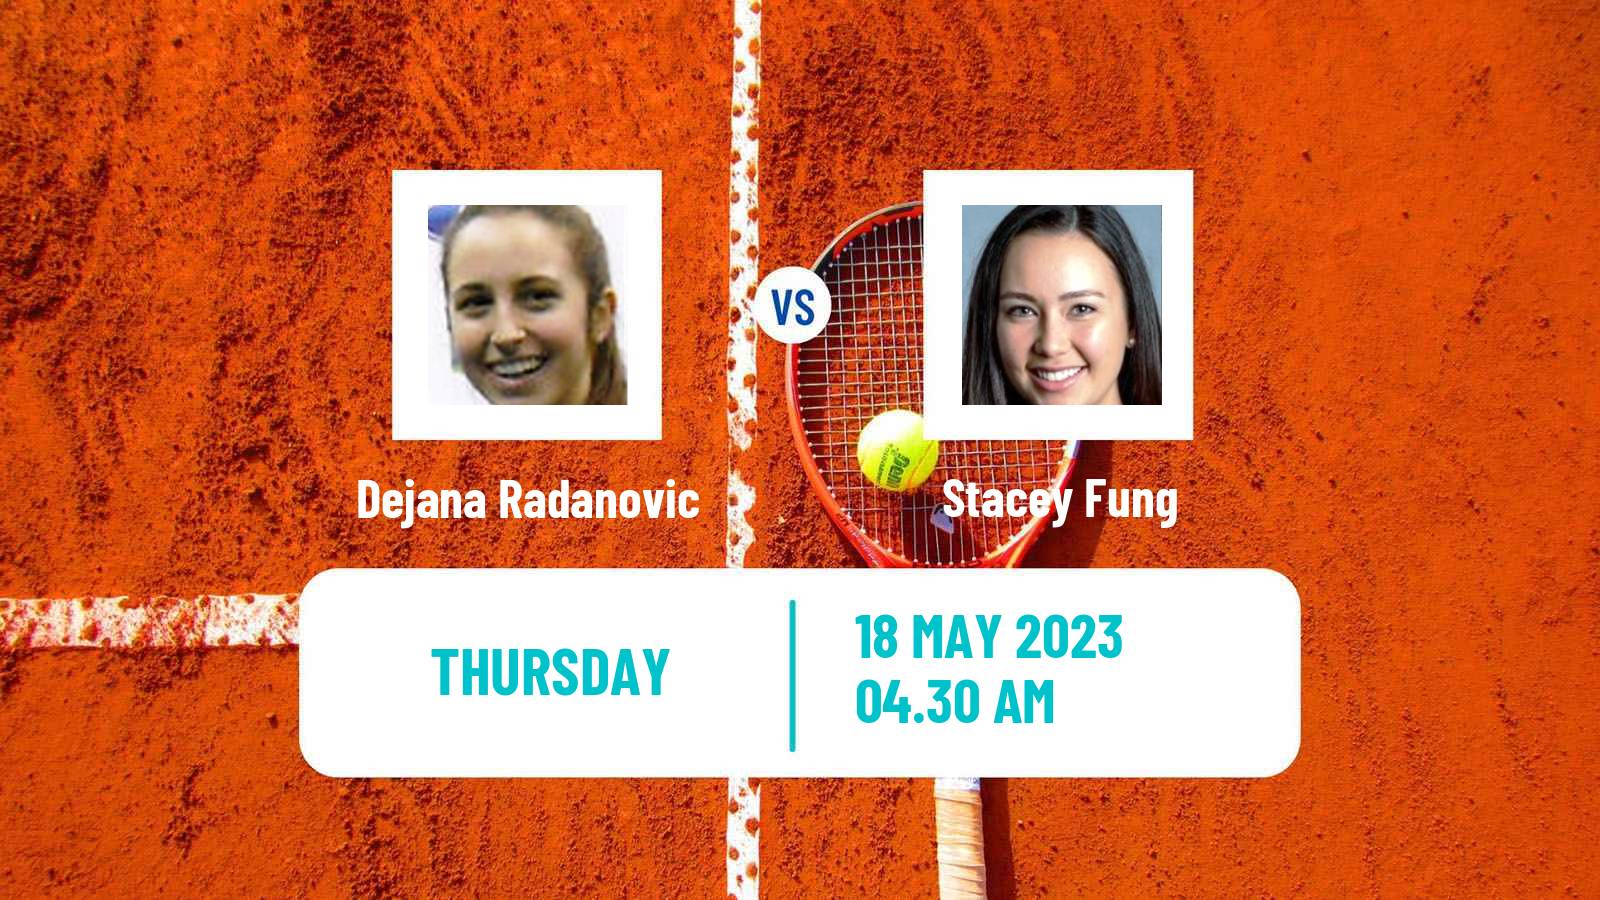 Tennis ITF W25 Kachreti 2 Women Dejana Radanovic - Stacey Fung